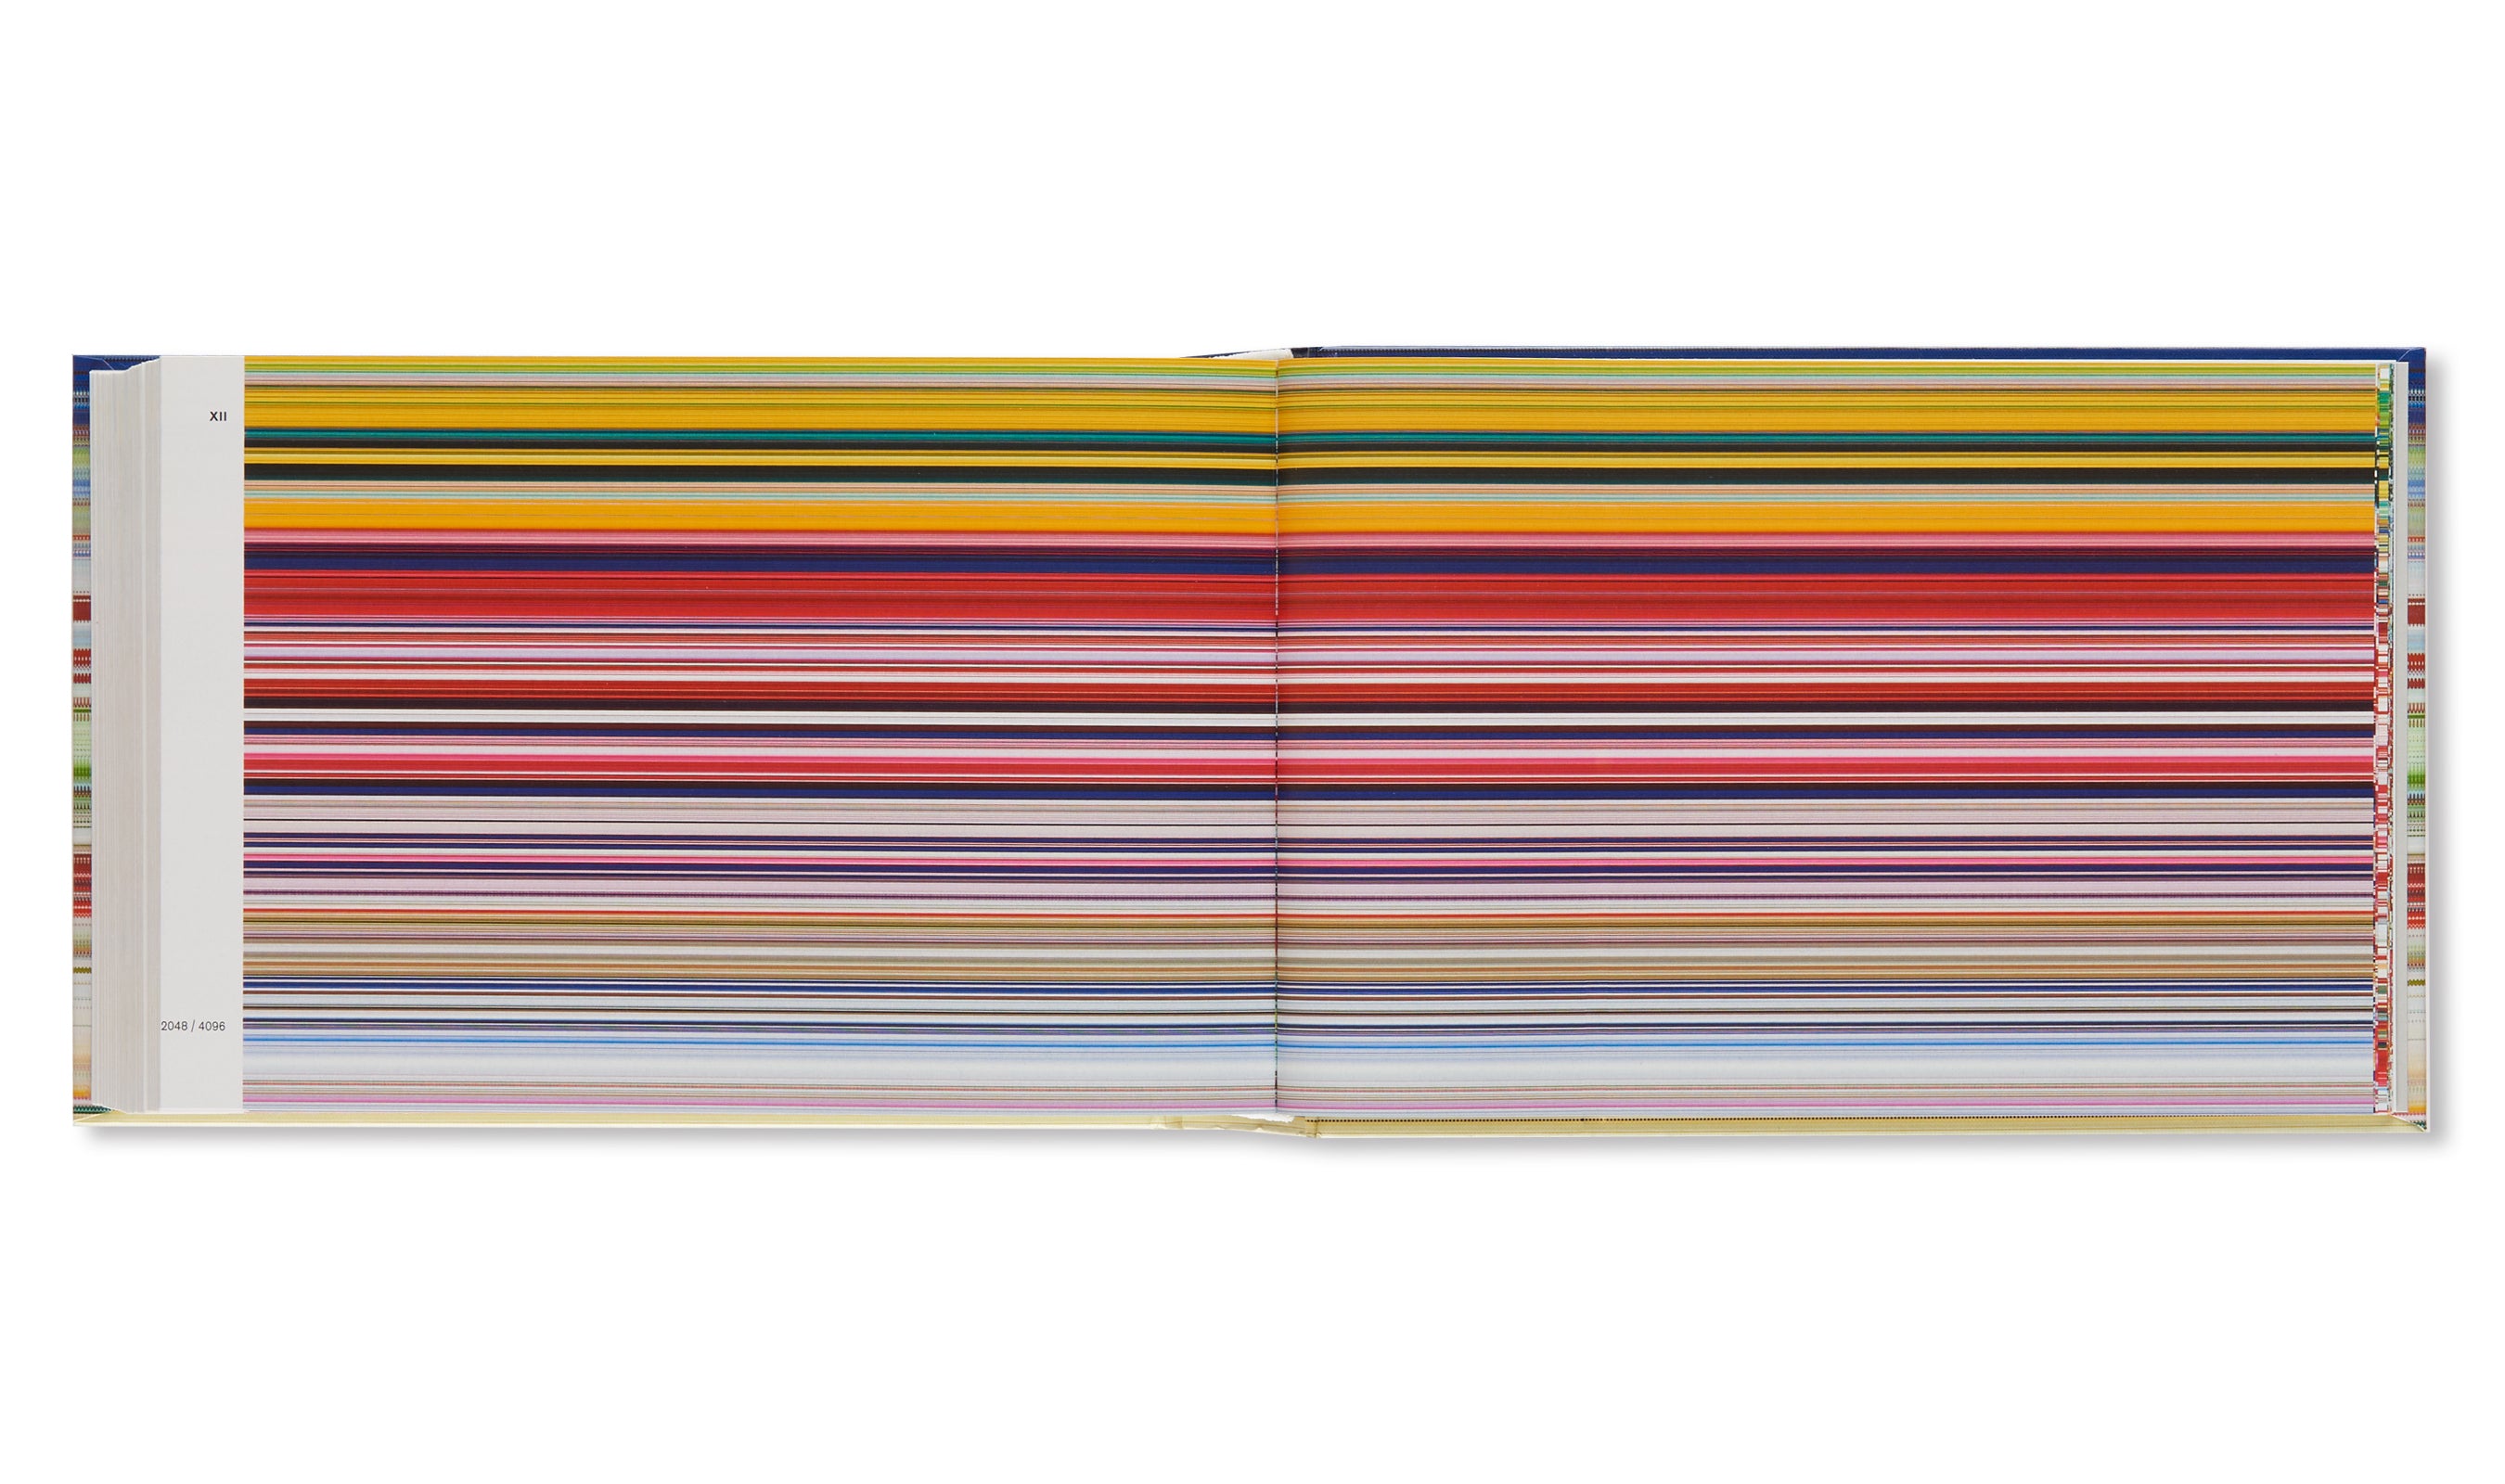 PATTERNS by Gerhard Richter